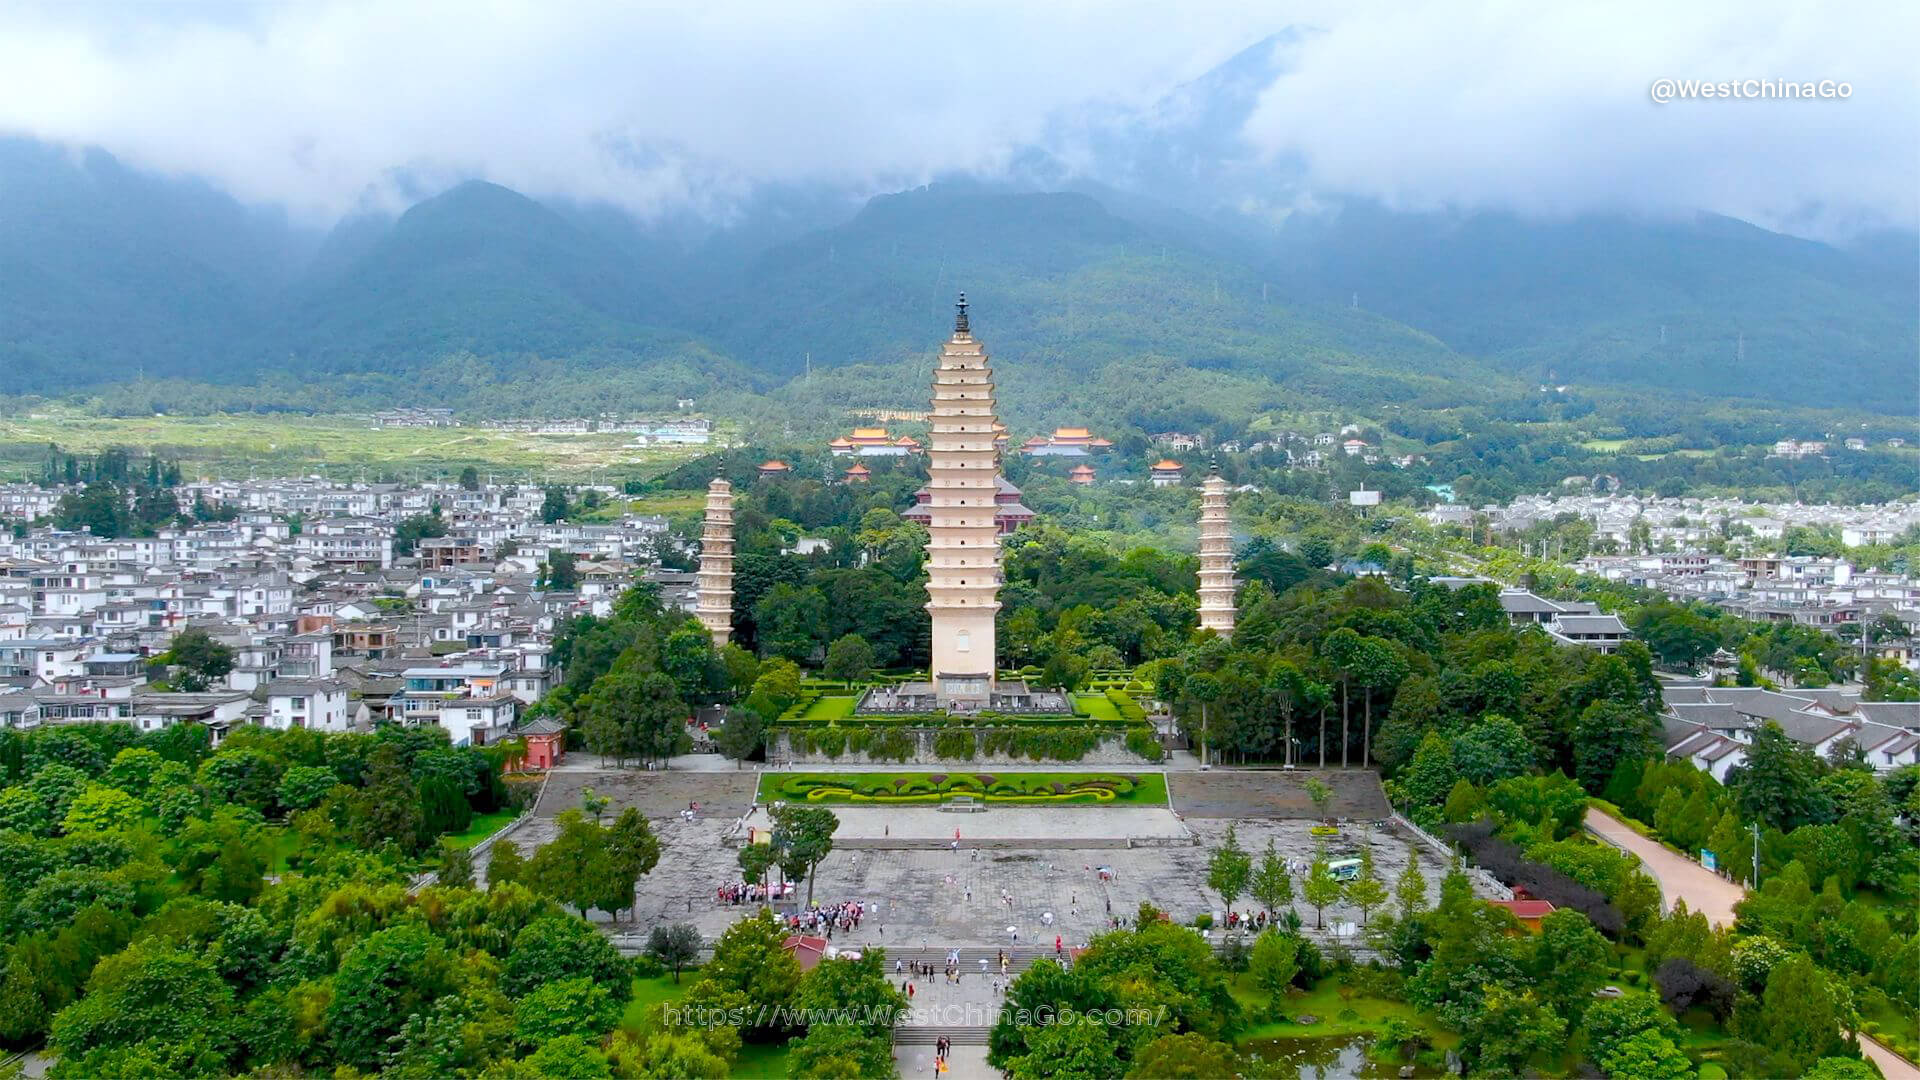 dali The Chongsheng Temple And The Three-Pagoda